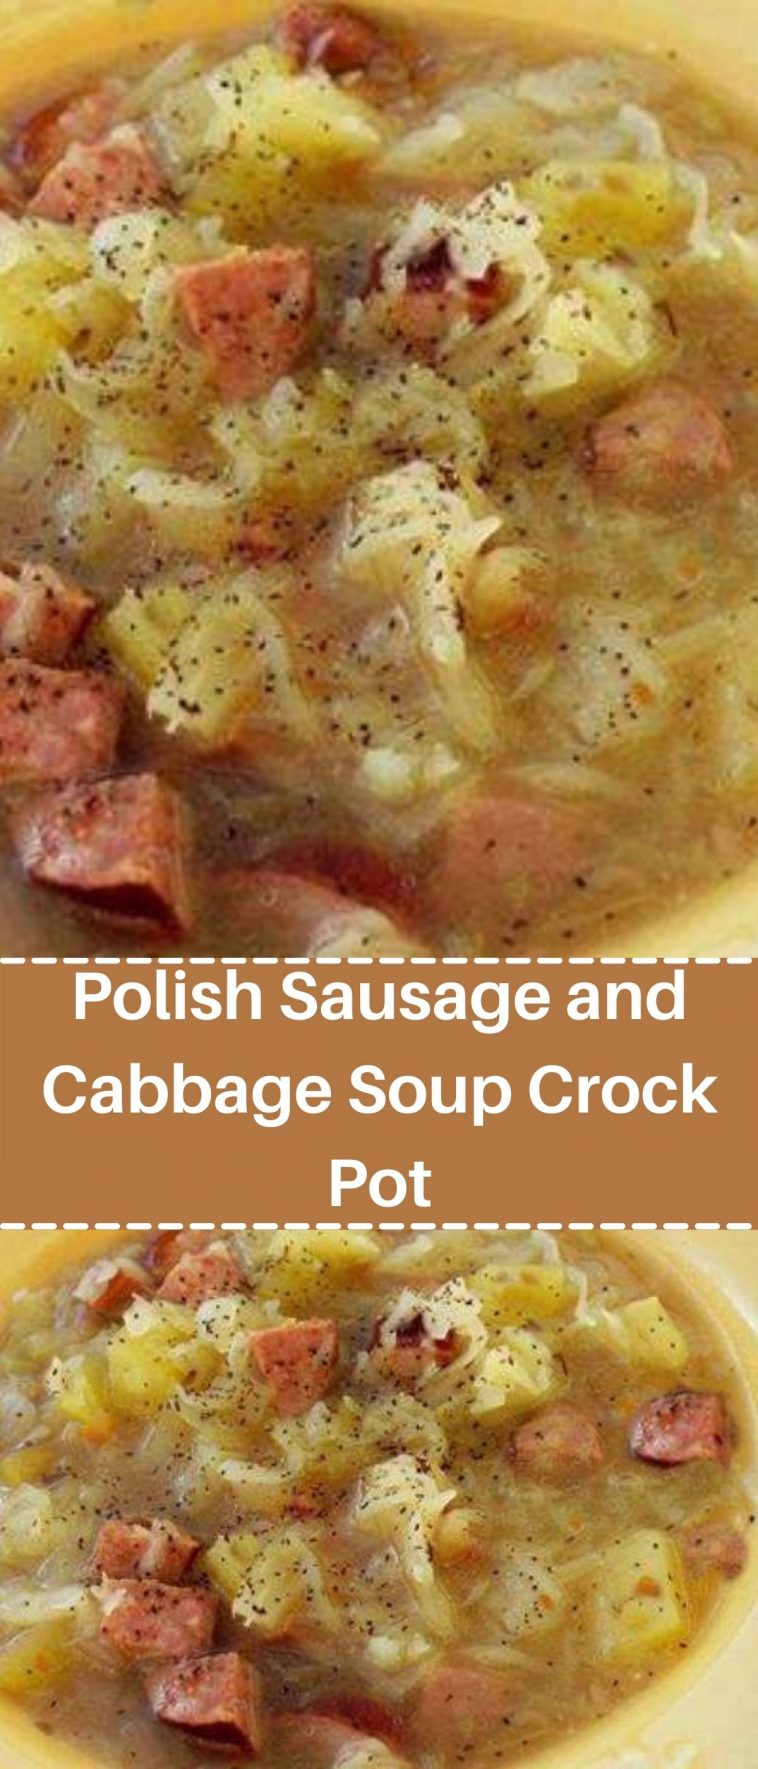 Polish Sausage and Cabbage Soup Crock Pot